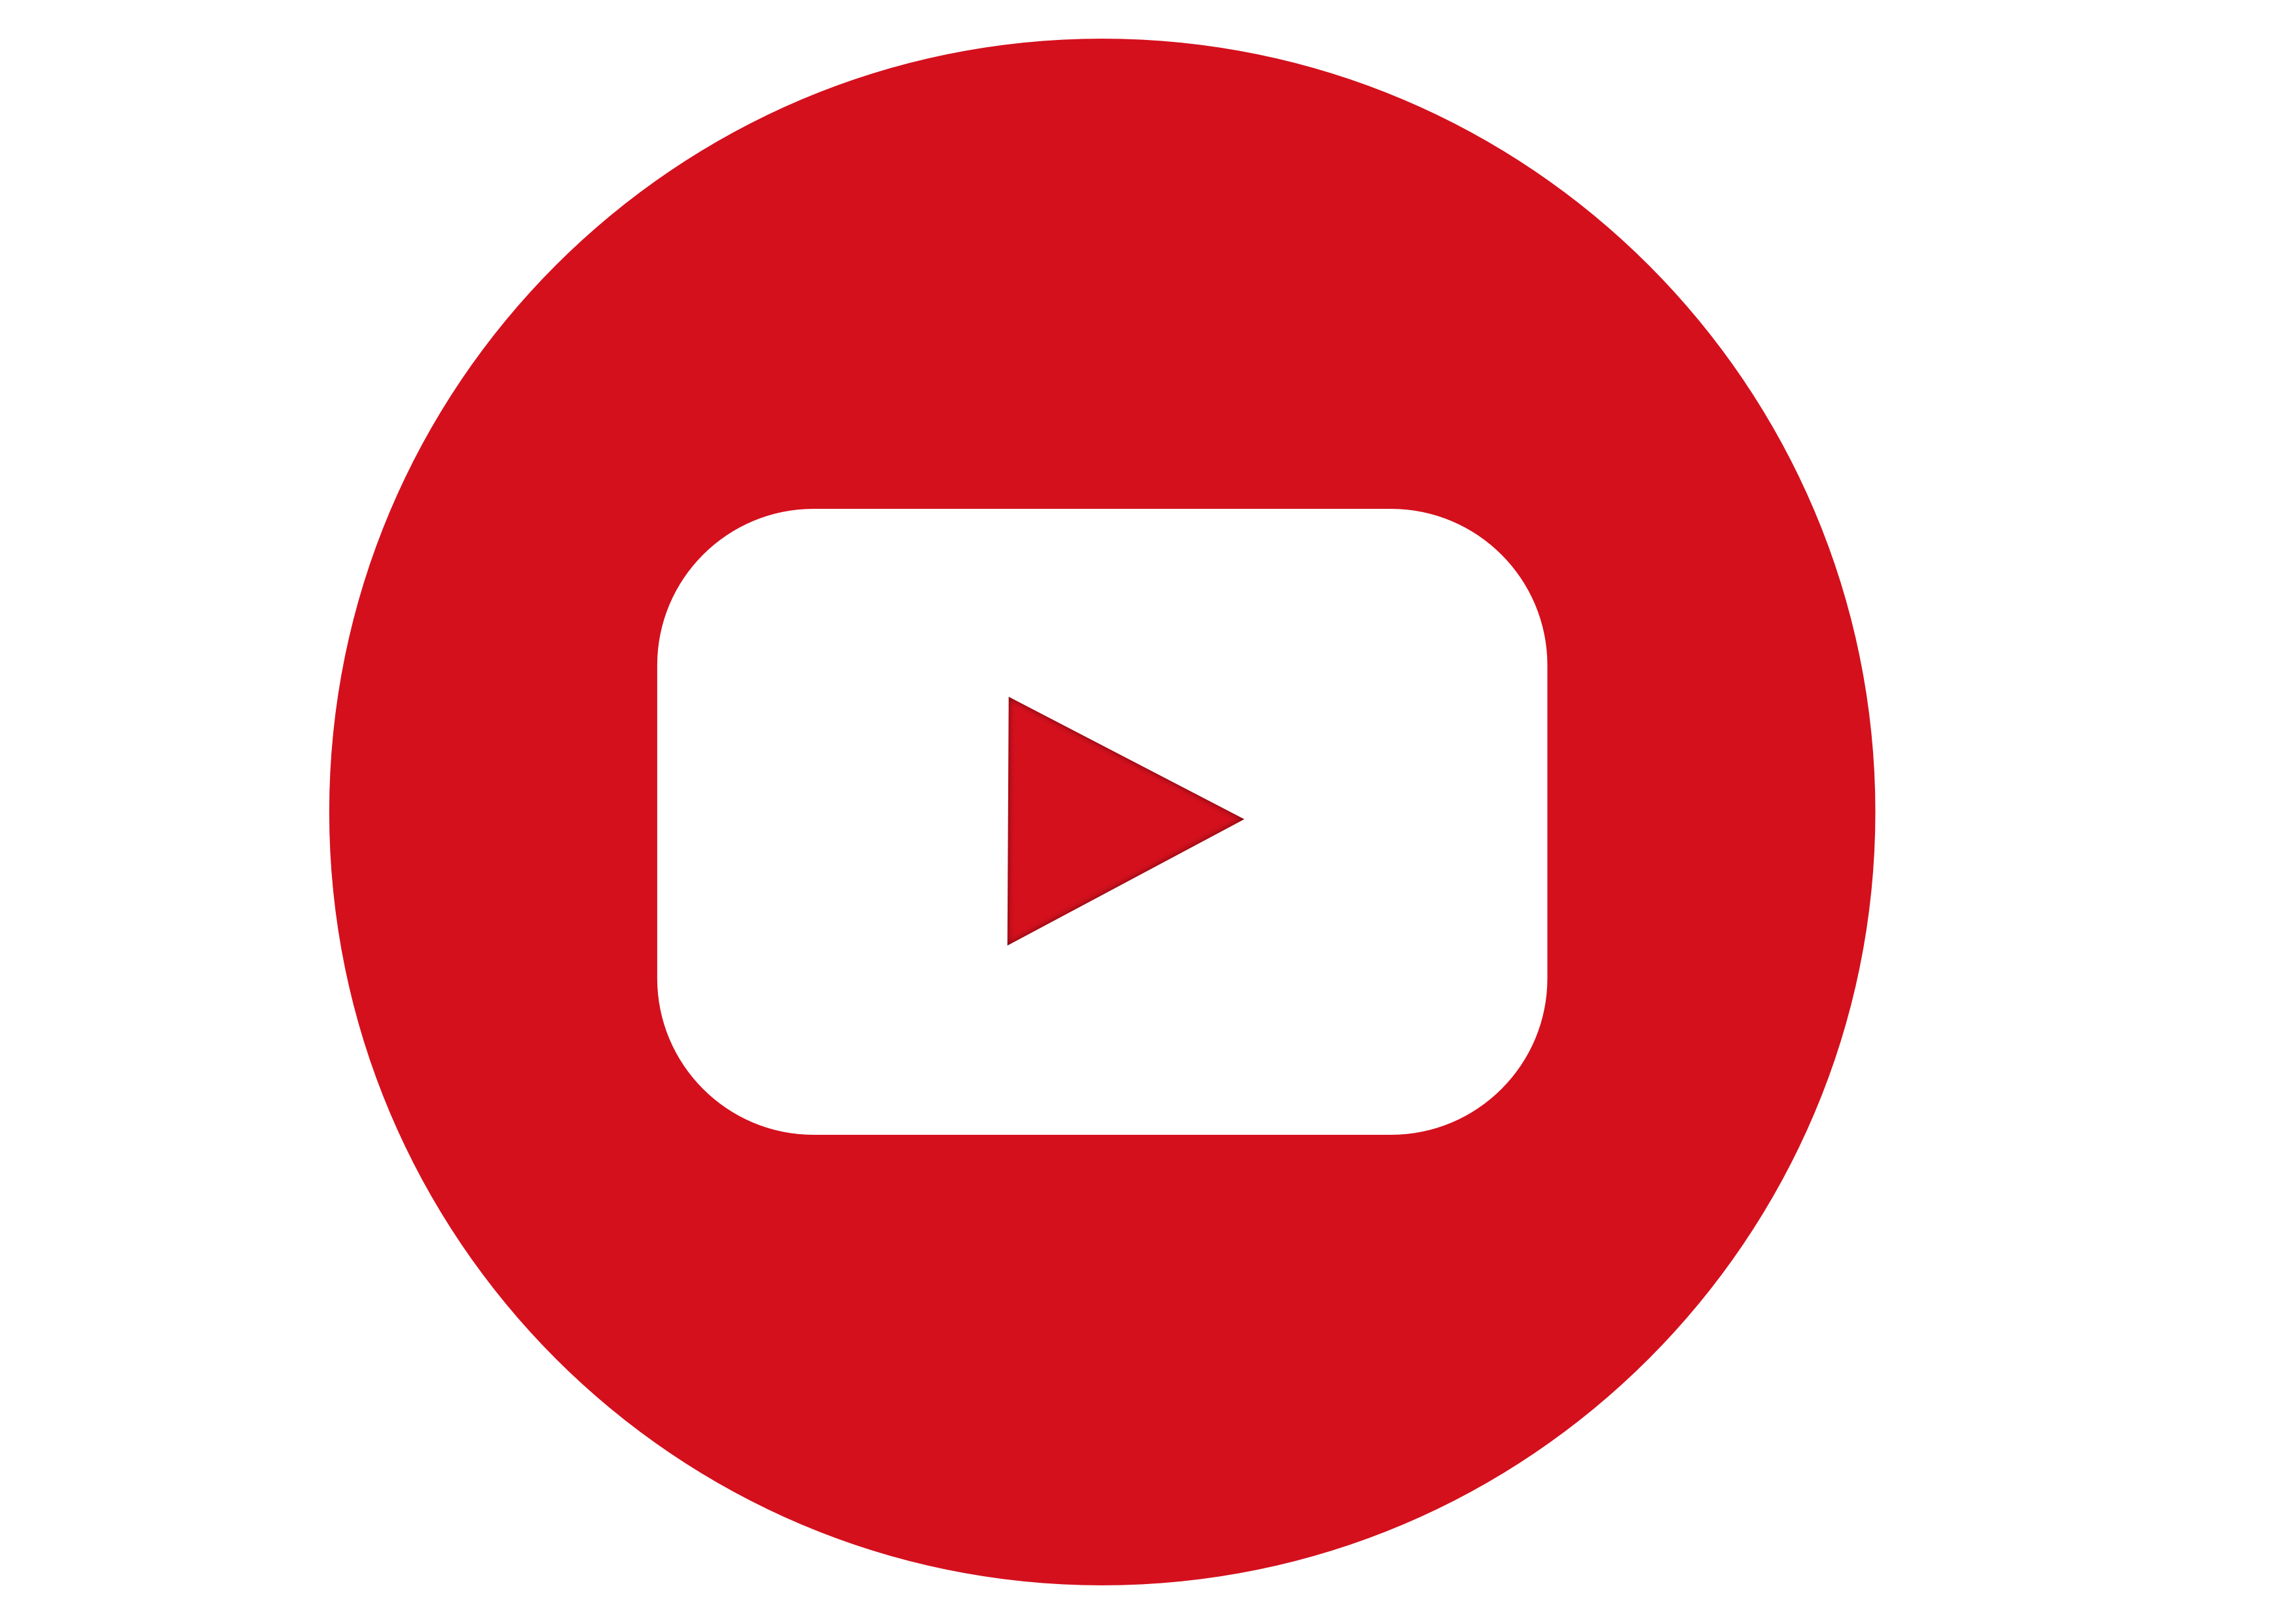 Ют т б. Ютуб лого. Значок ютуб PNG. Логотип youtube на белом фоне. Ютуб лого без фона.